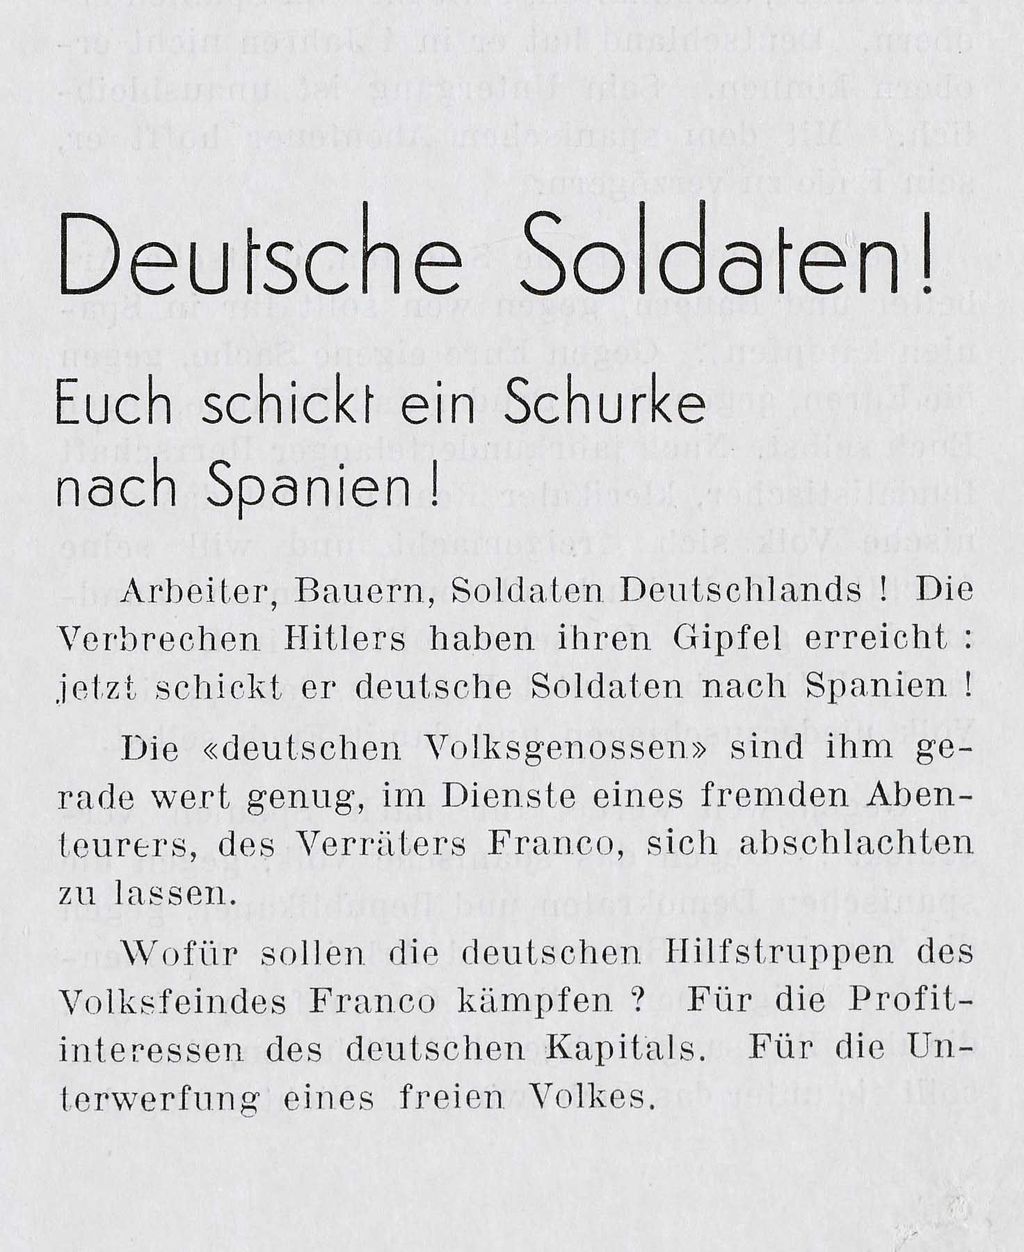 Flugblatt: Flugschrift mit einem Text von Heinrich Mann gegen den Einsatz deutscher Soldaten im Spanischen Bürgerkrieg, 1936